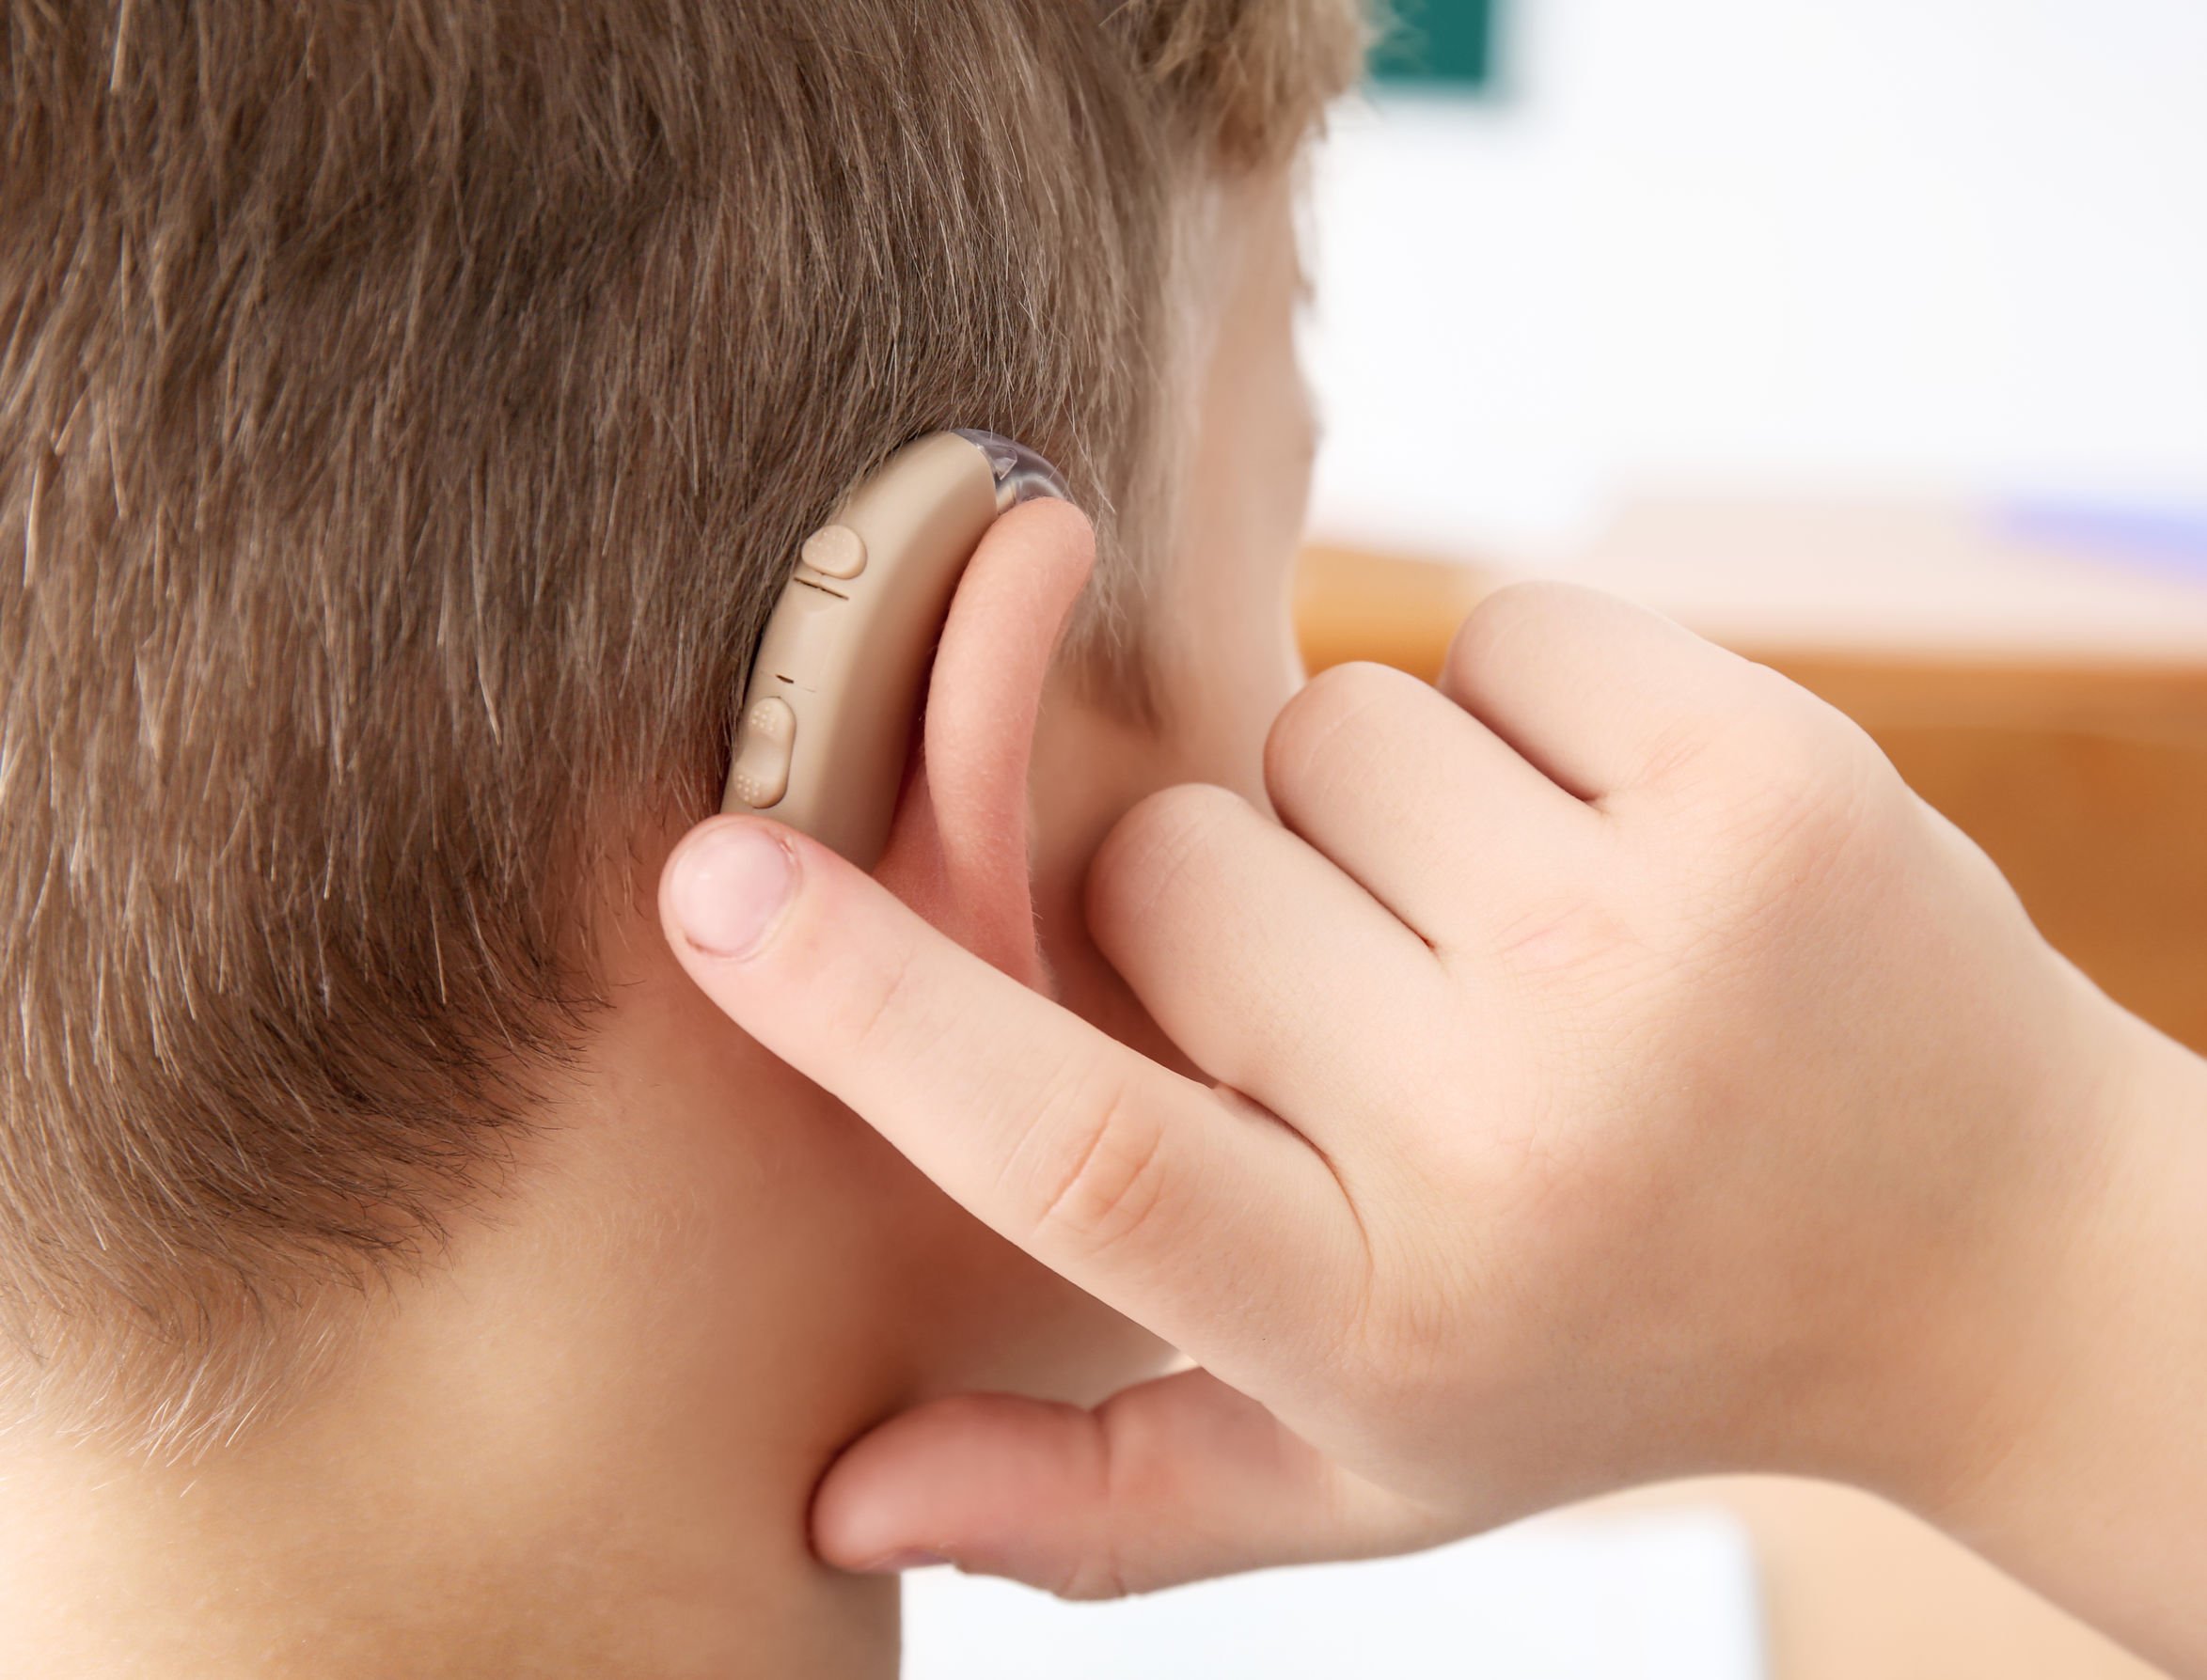 Homem com deficiência auditiva e aparelho para ouvir